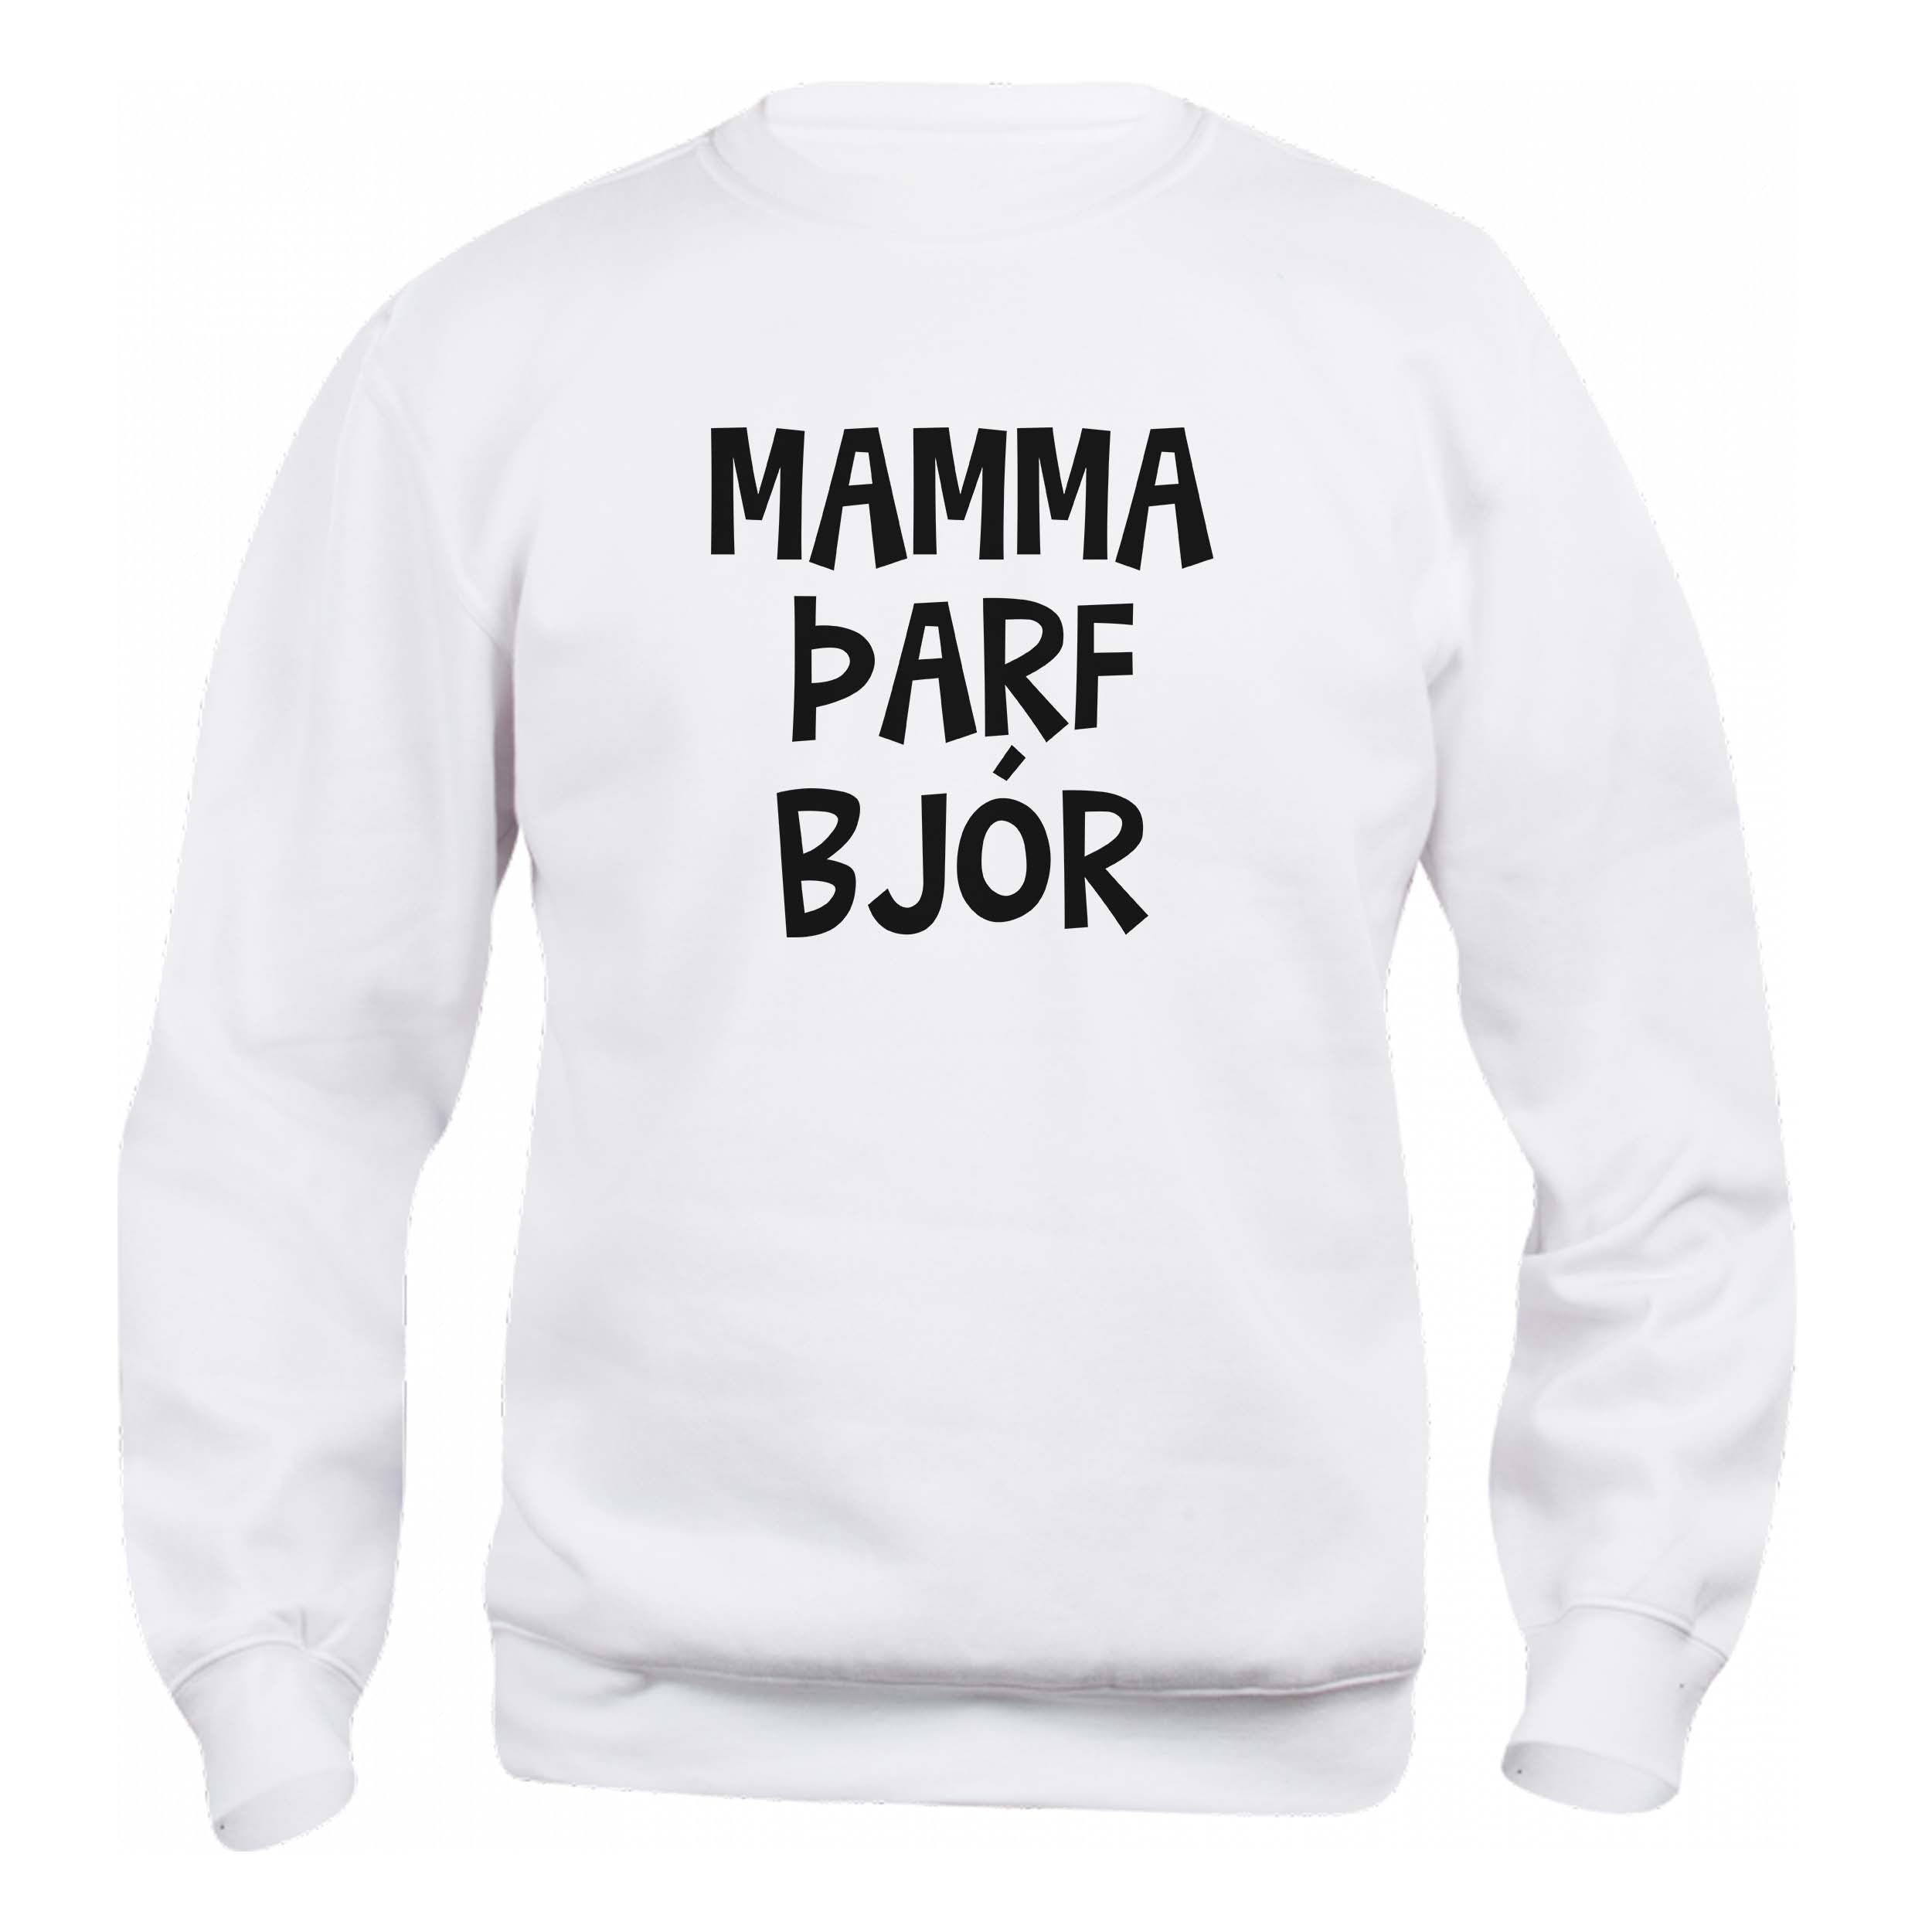 MAMMA ÞARF BJÓR - Peysa - Hvít